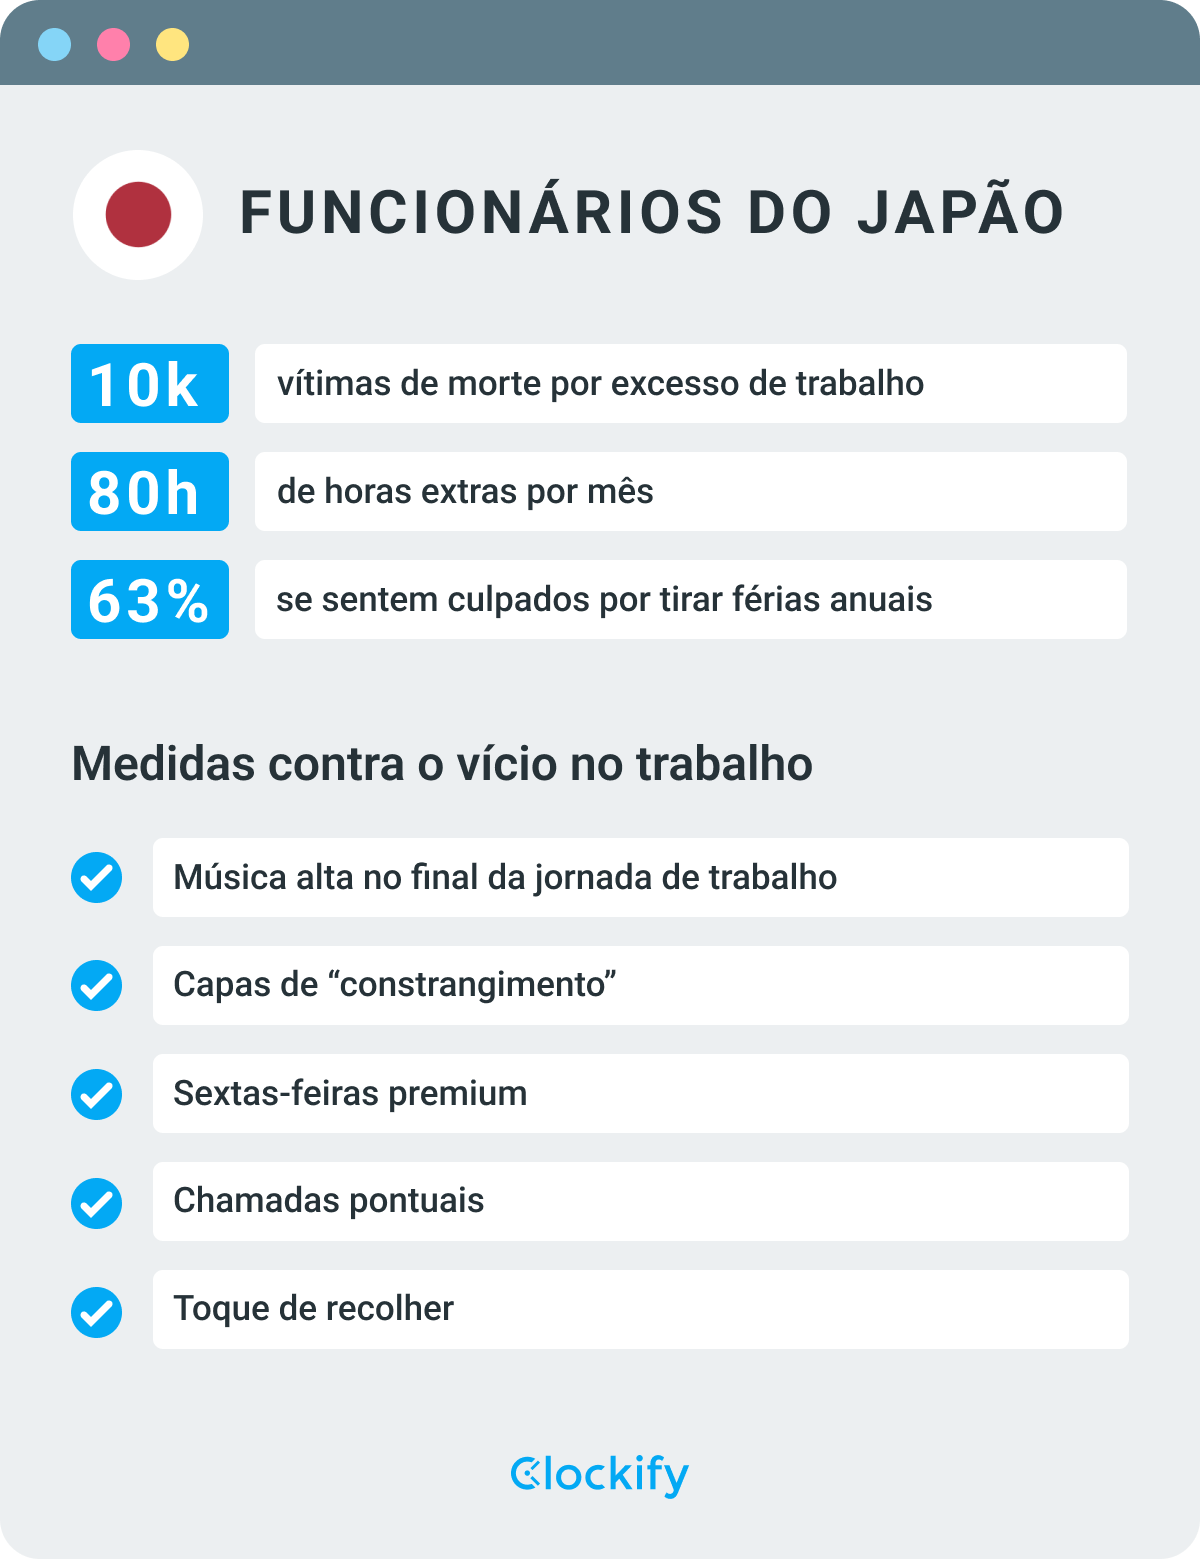 Estatísticas de funcionários japoneses - infográfico